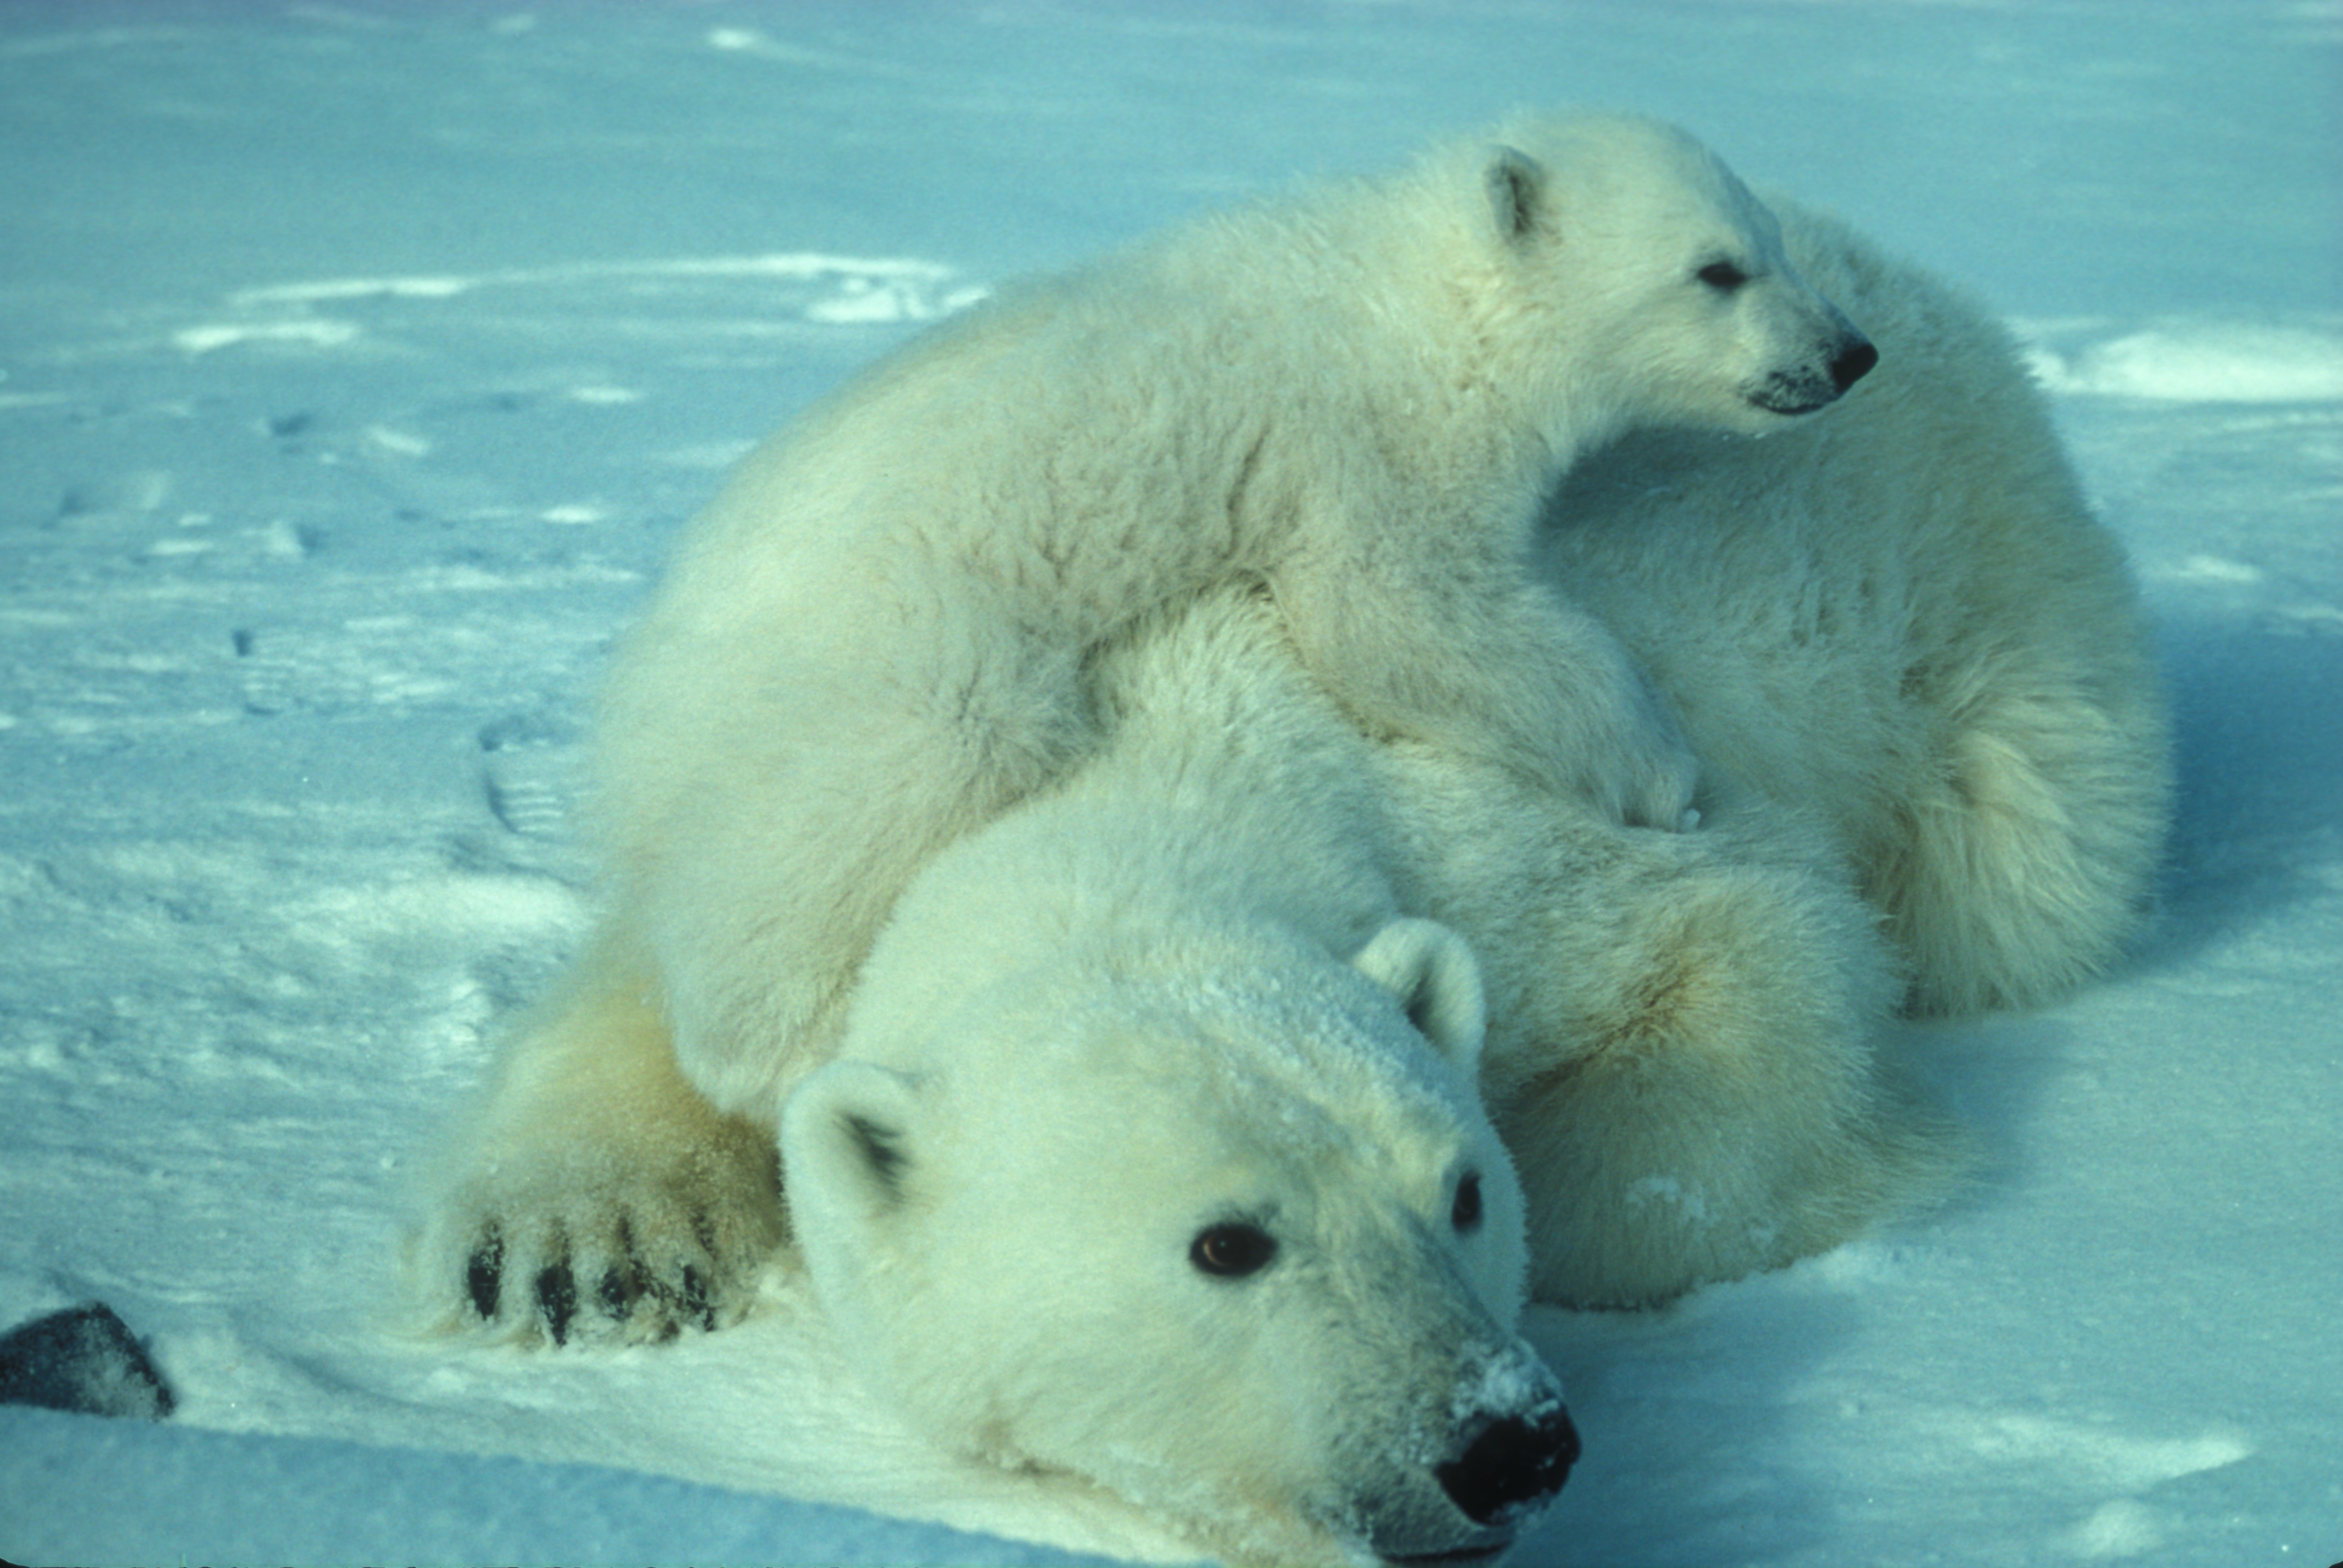 A polar bear with her baby